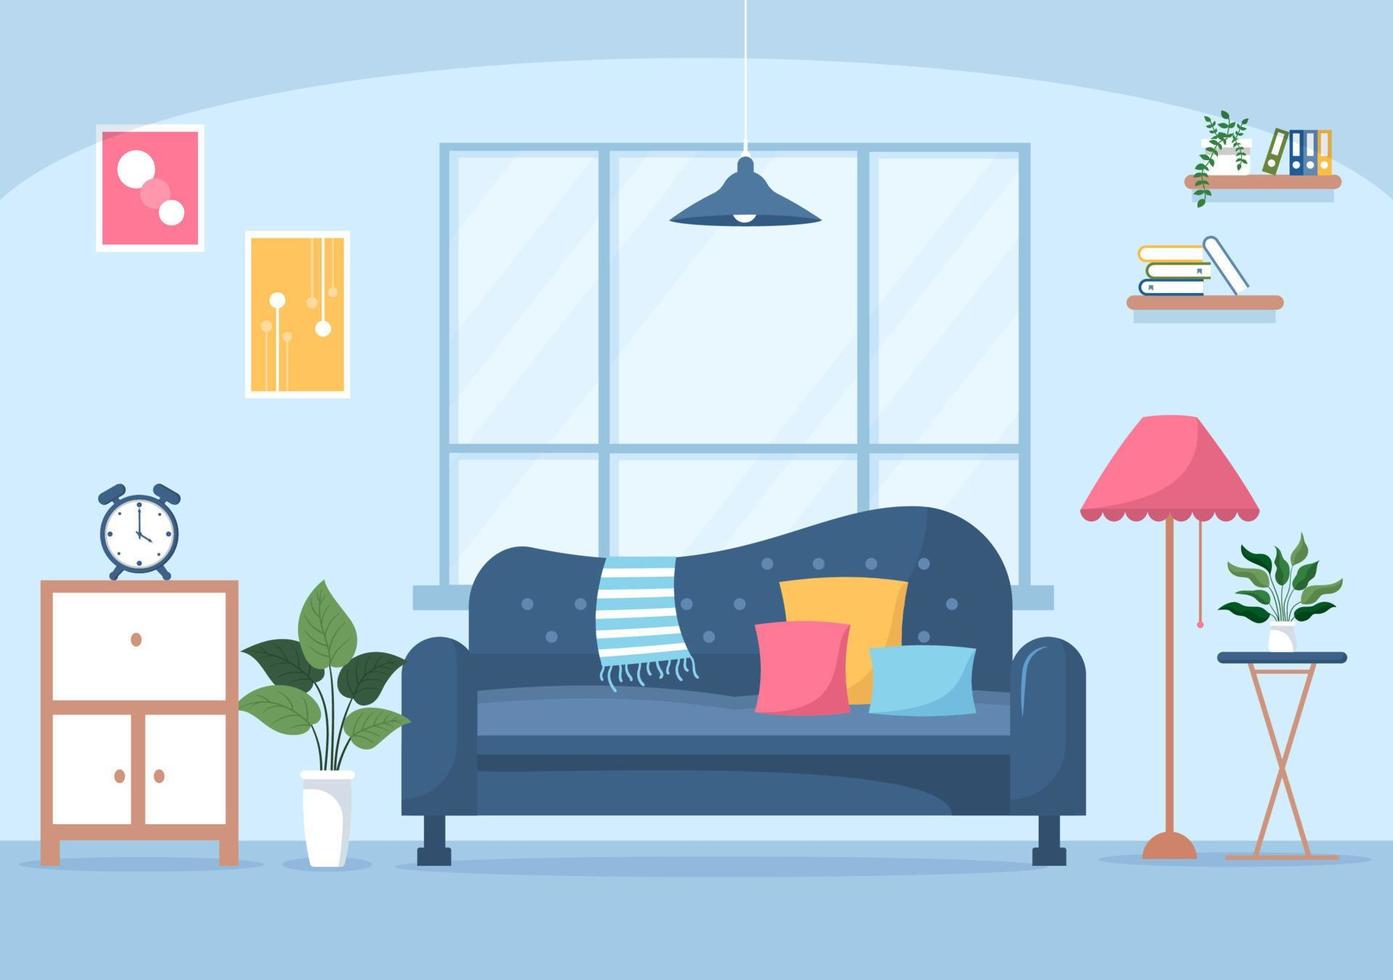 huismeubilair platte ontwerpillustratie voor de woonkamer om comfortabel te zijn zoals een bank, bureau, kast, lichten, planten en wandkleden vector